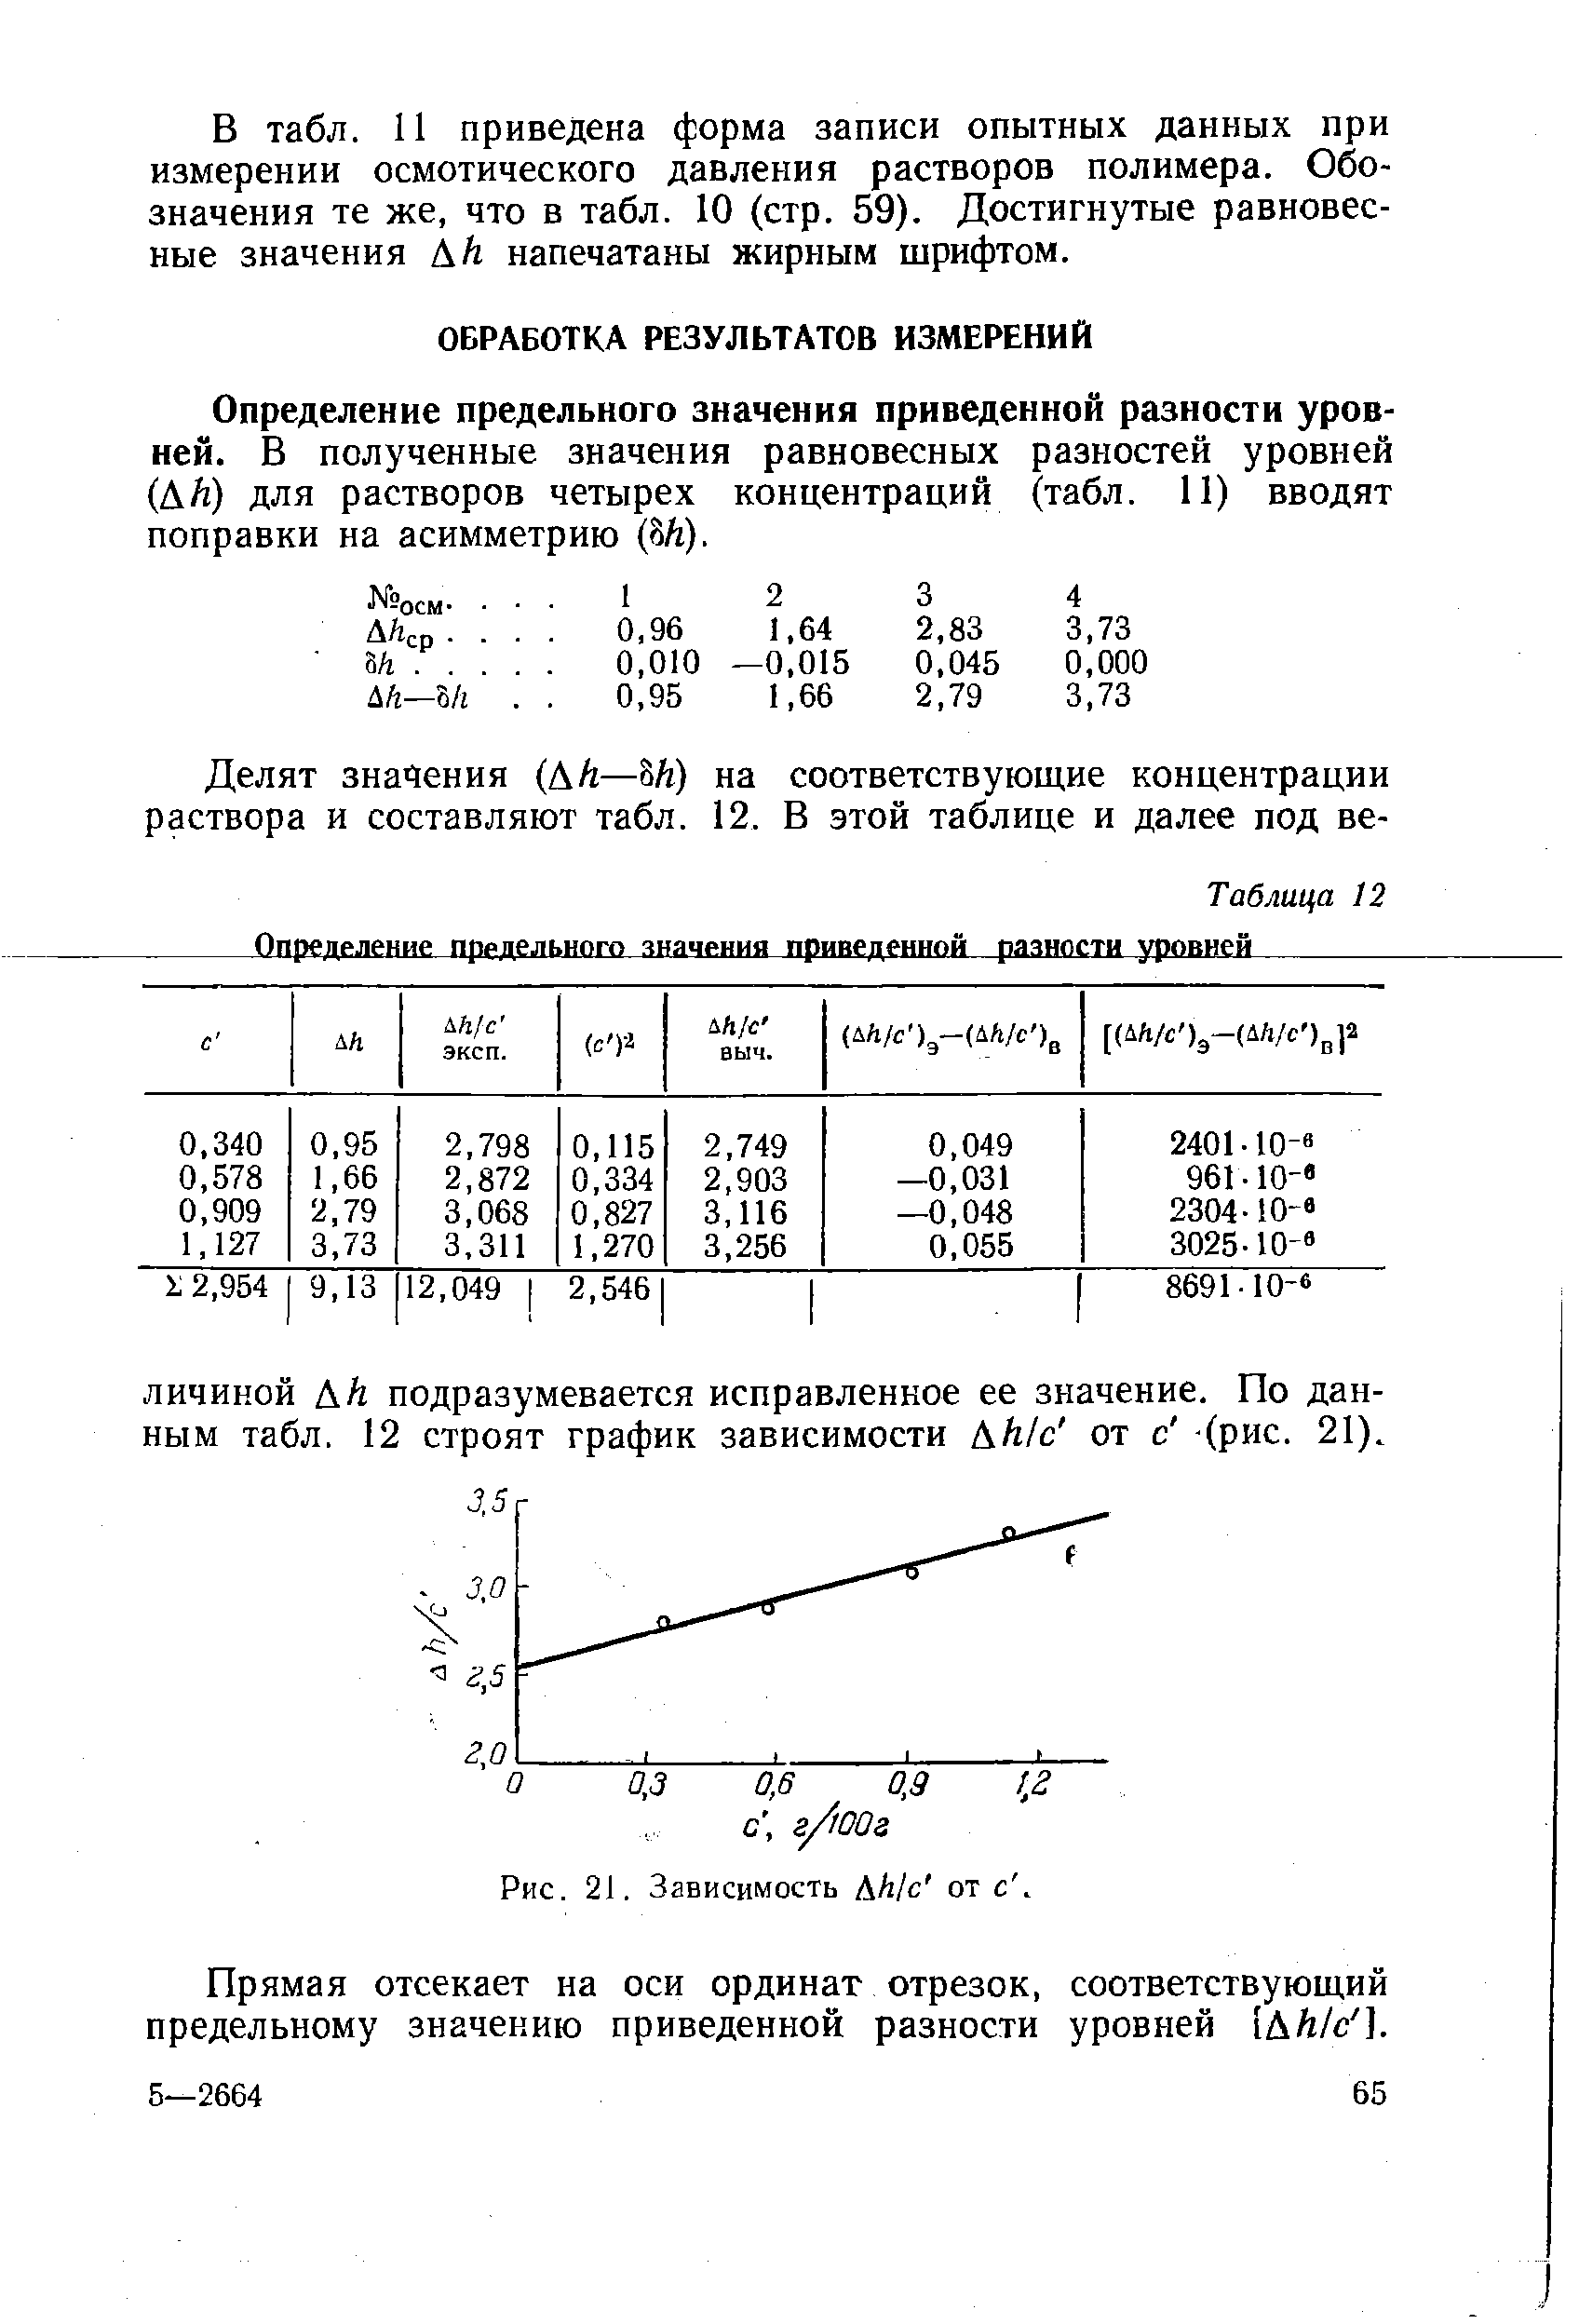 Определение предельного значения приведенной разности уровней. В полученные значения равновесных разностей уровней (АЛ) для растворов четырех концентраций (табл. 11) вводят поправки на асимметрию (8Л).